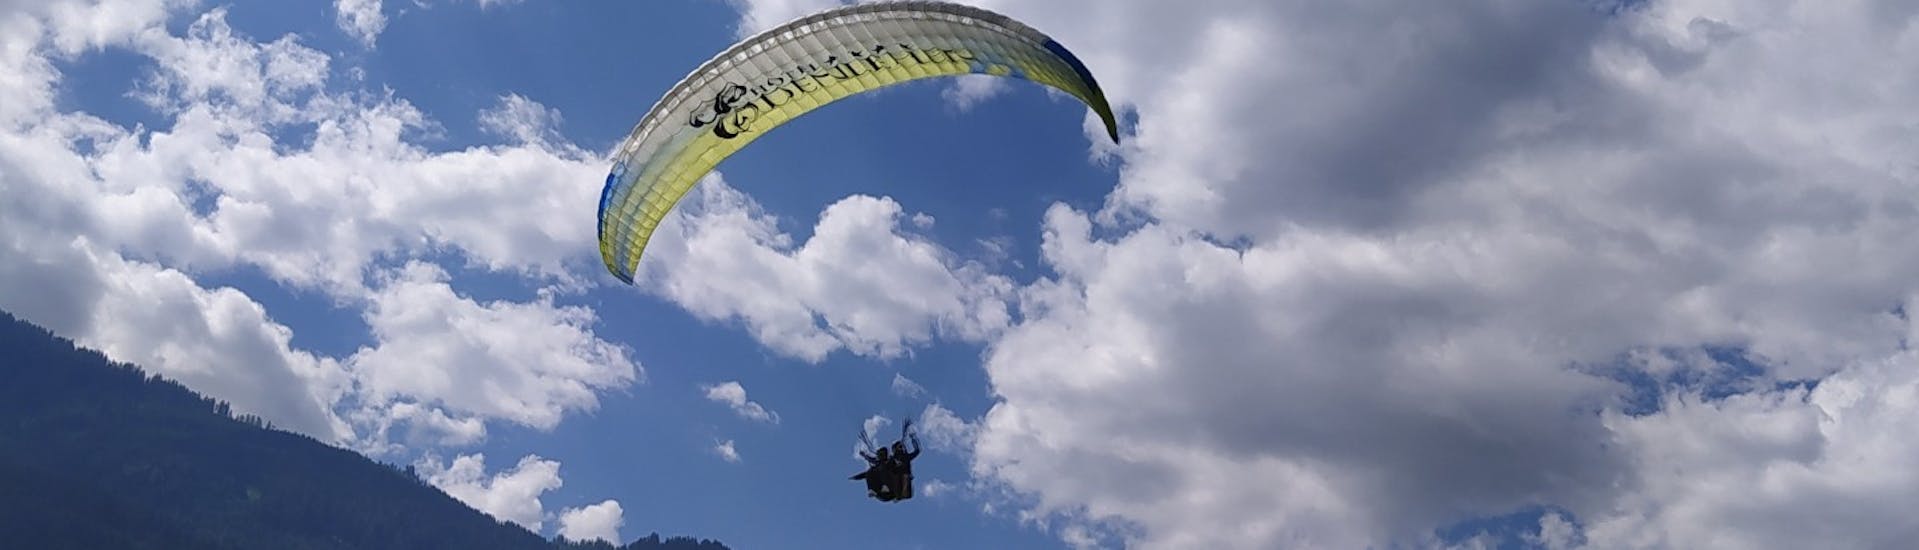 Un partecipante e un istruttore volano sopra il terreno poco prima dell'atterraggio durante il Parapendio biposto in Zillertal a Hintertux - Volo Termico con Fly 2095